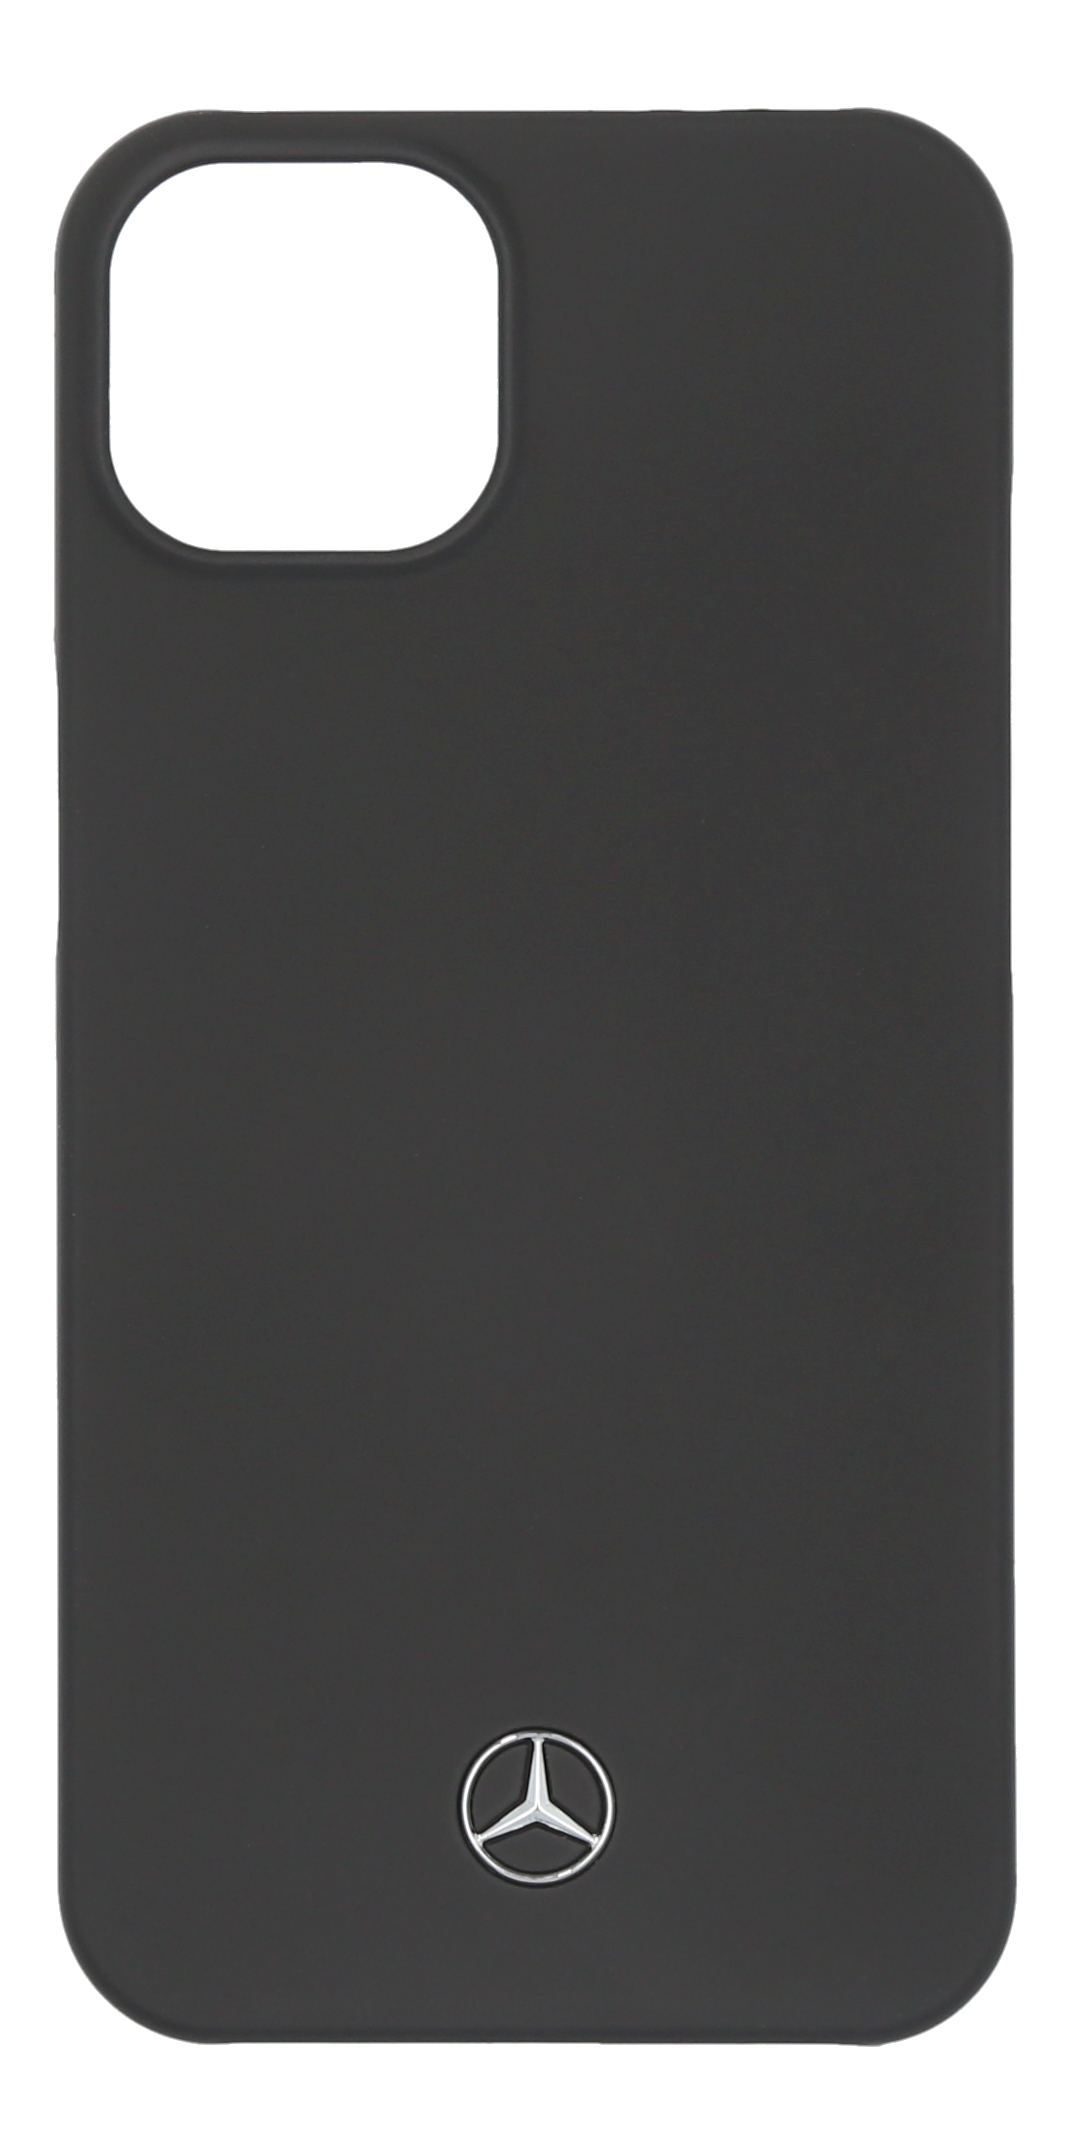 Hülle für iPhone® 13 - schwarz, Polycarbonat / Mikrofaser